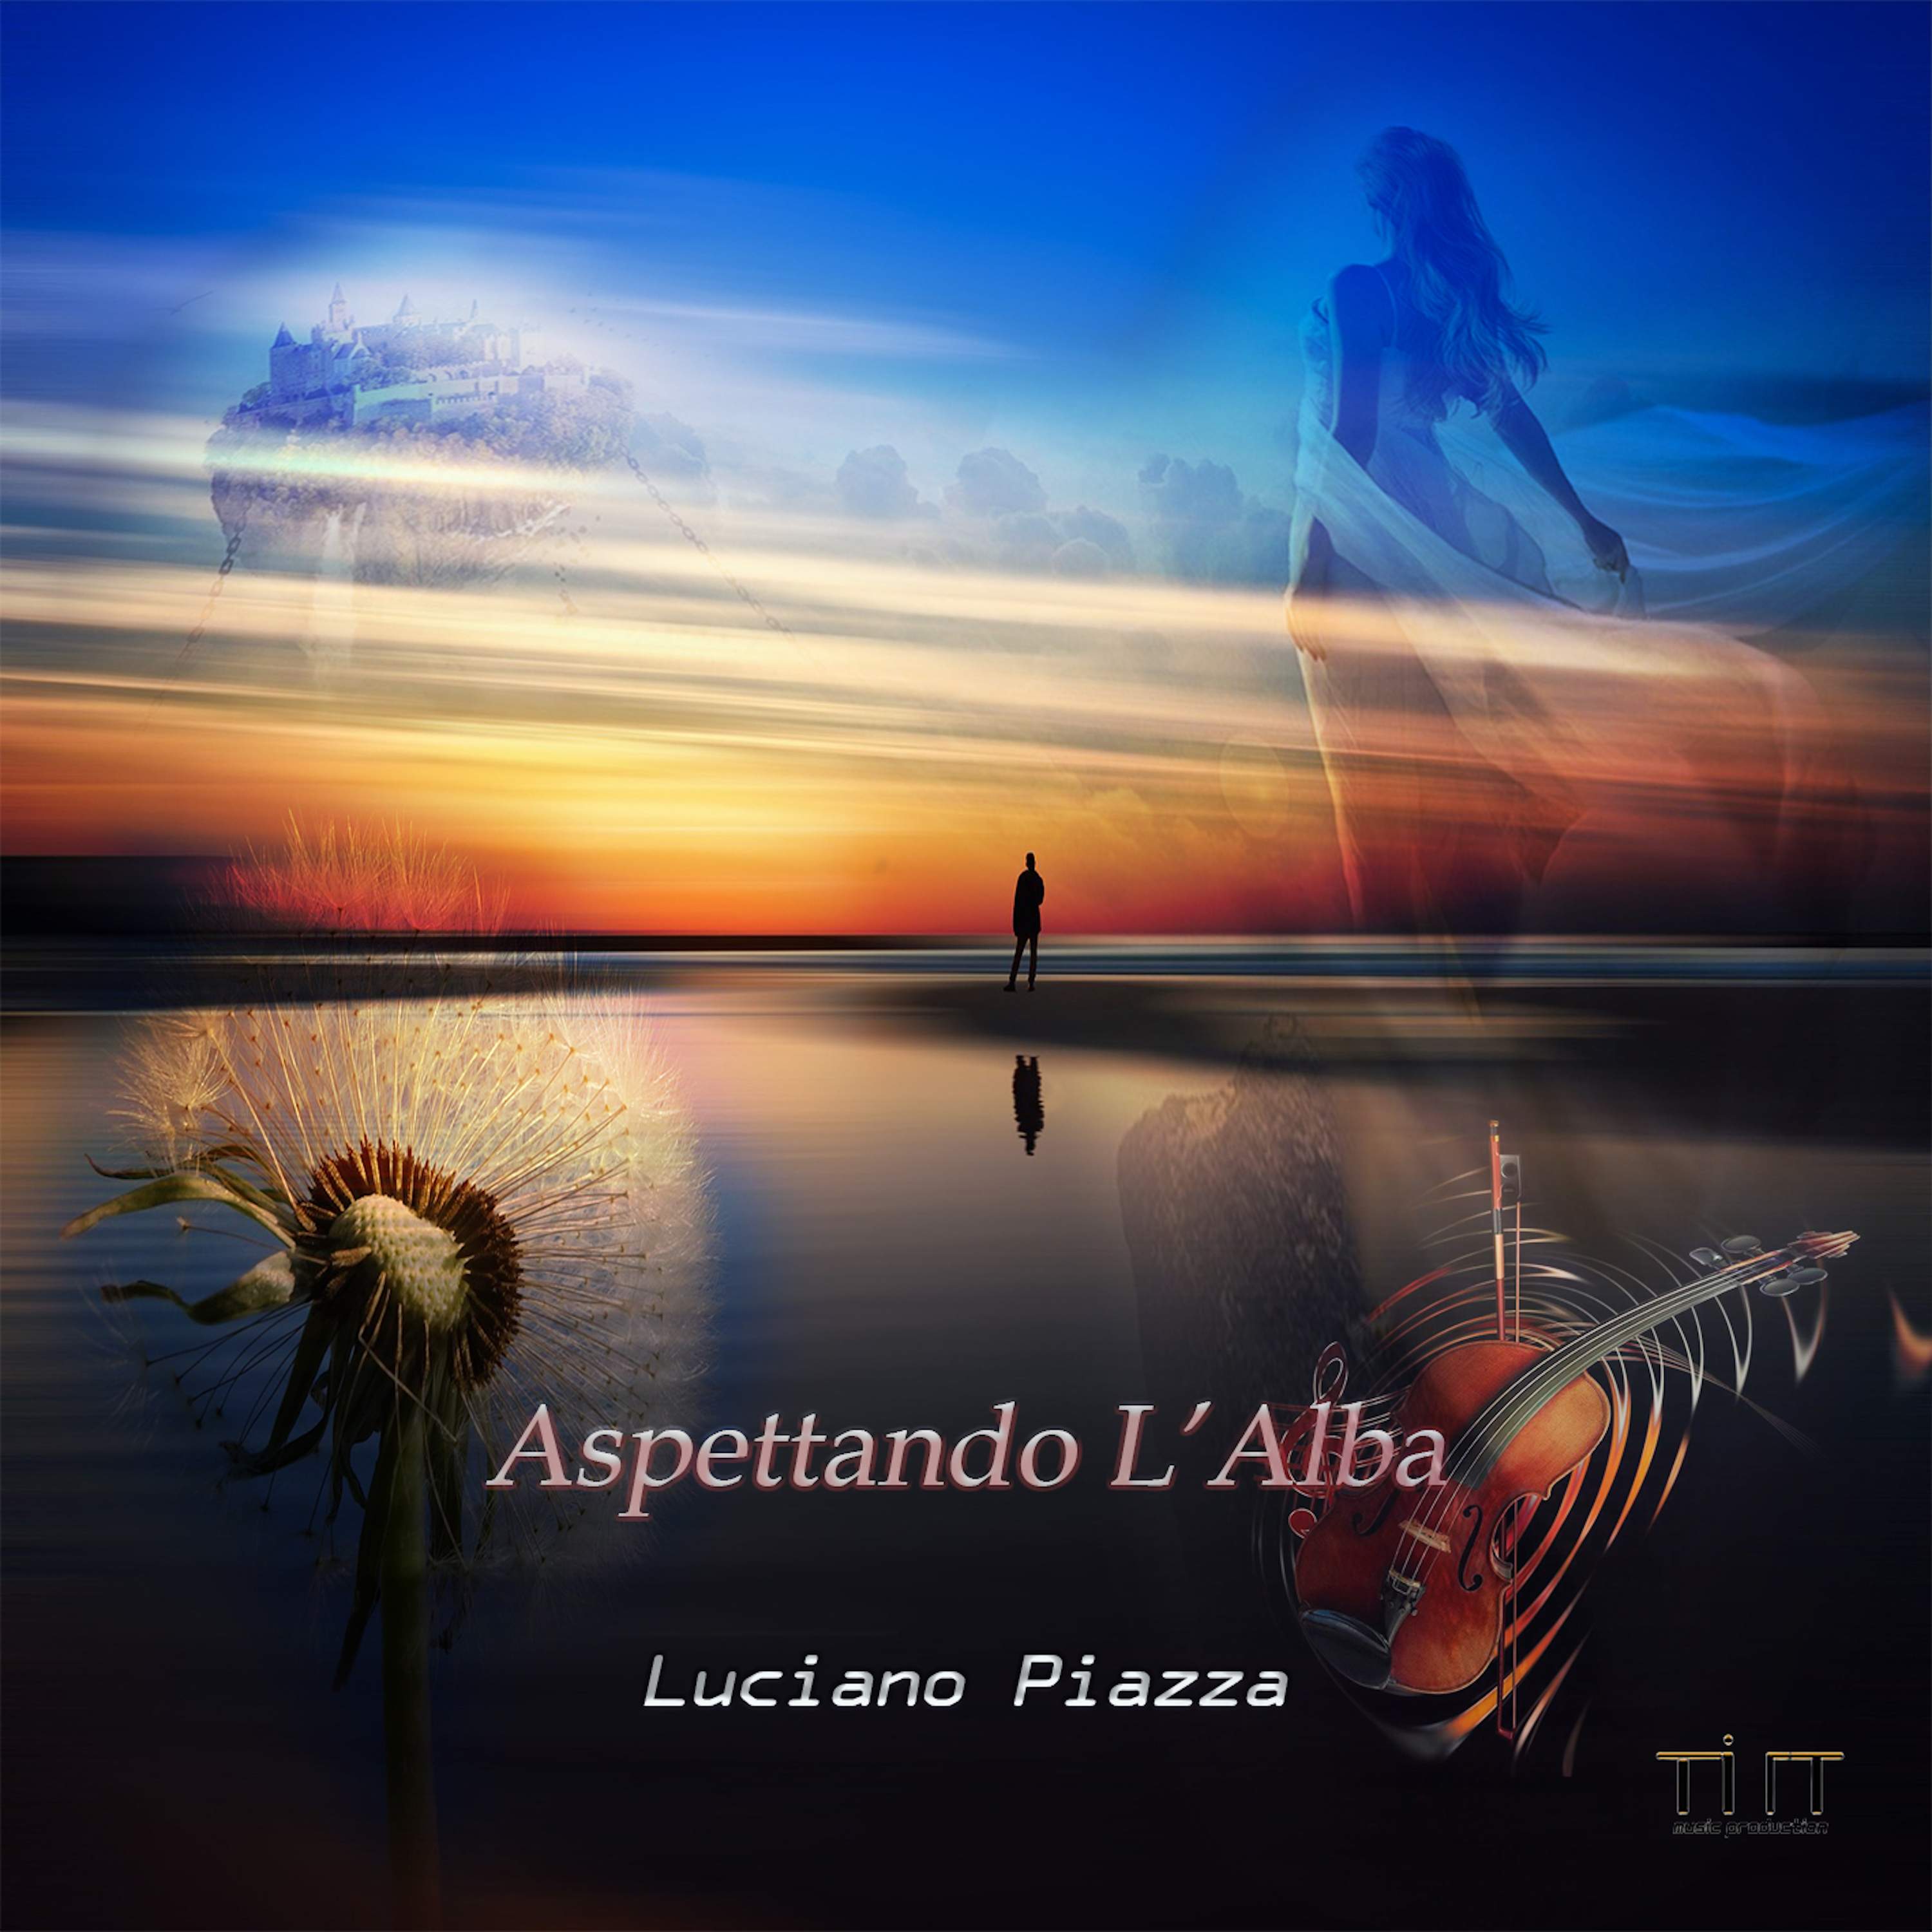 Aspettando l'Alba è il nuvo brano di Luciano Piazza dedicato alla Primavera